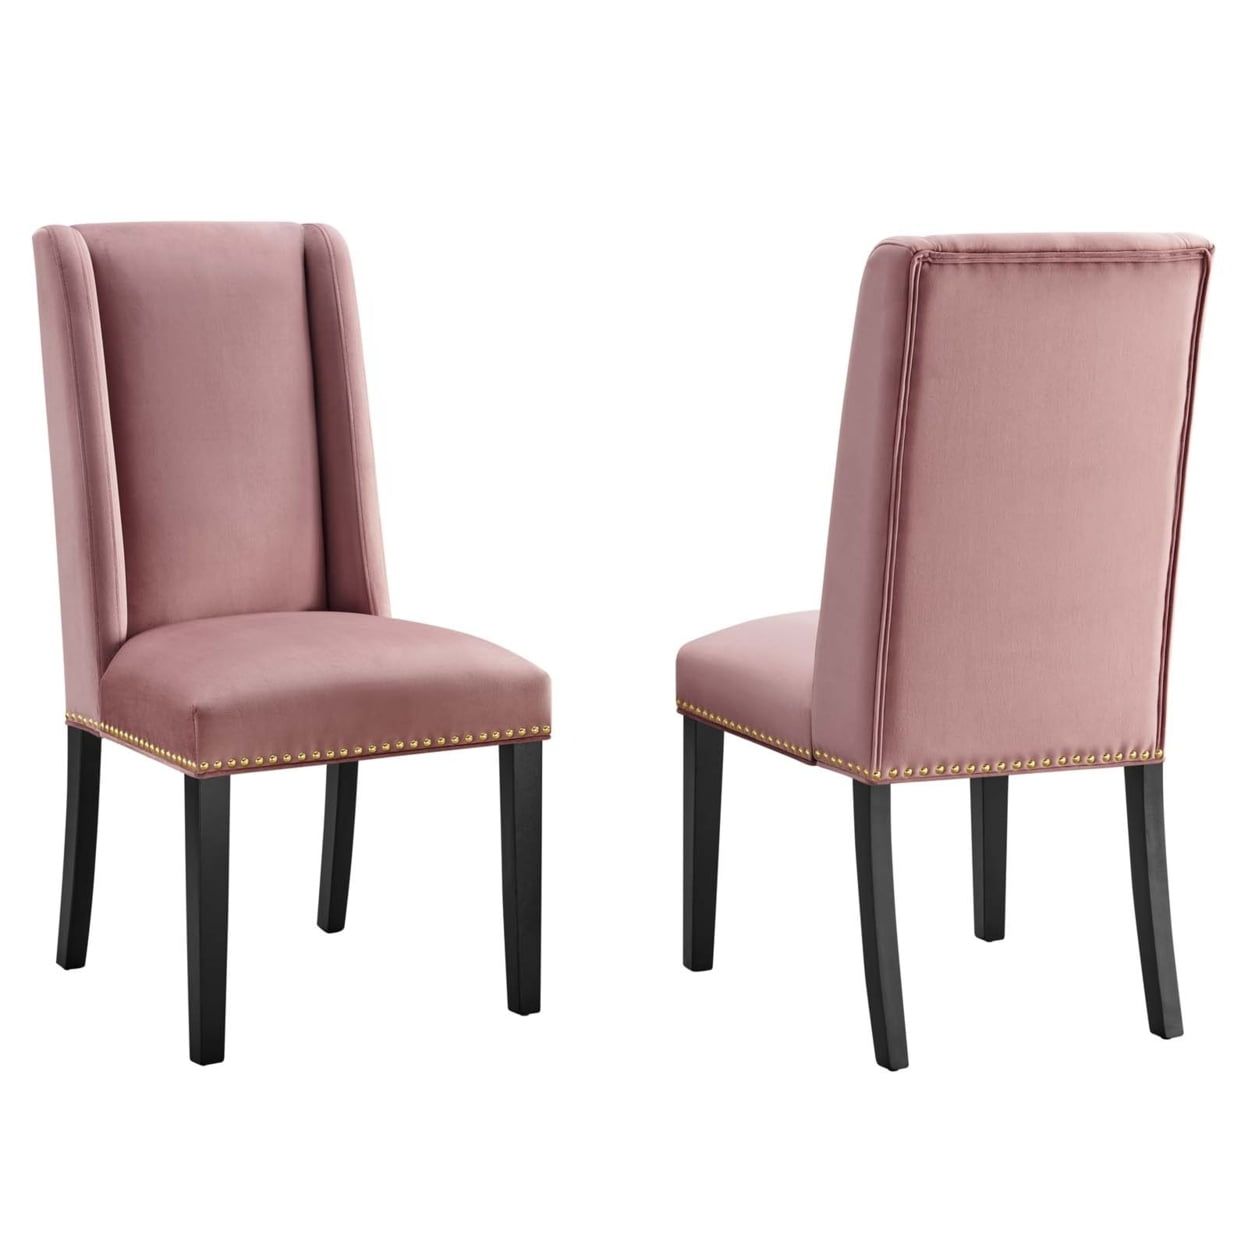 Dusty Rose Velvet Upholstered Side Chair with Wood Frame